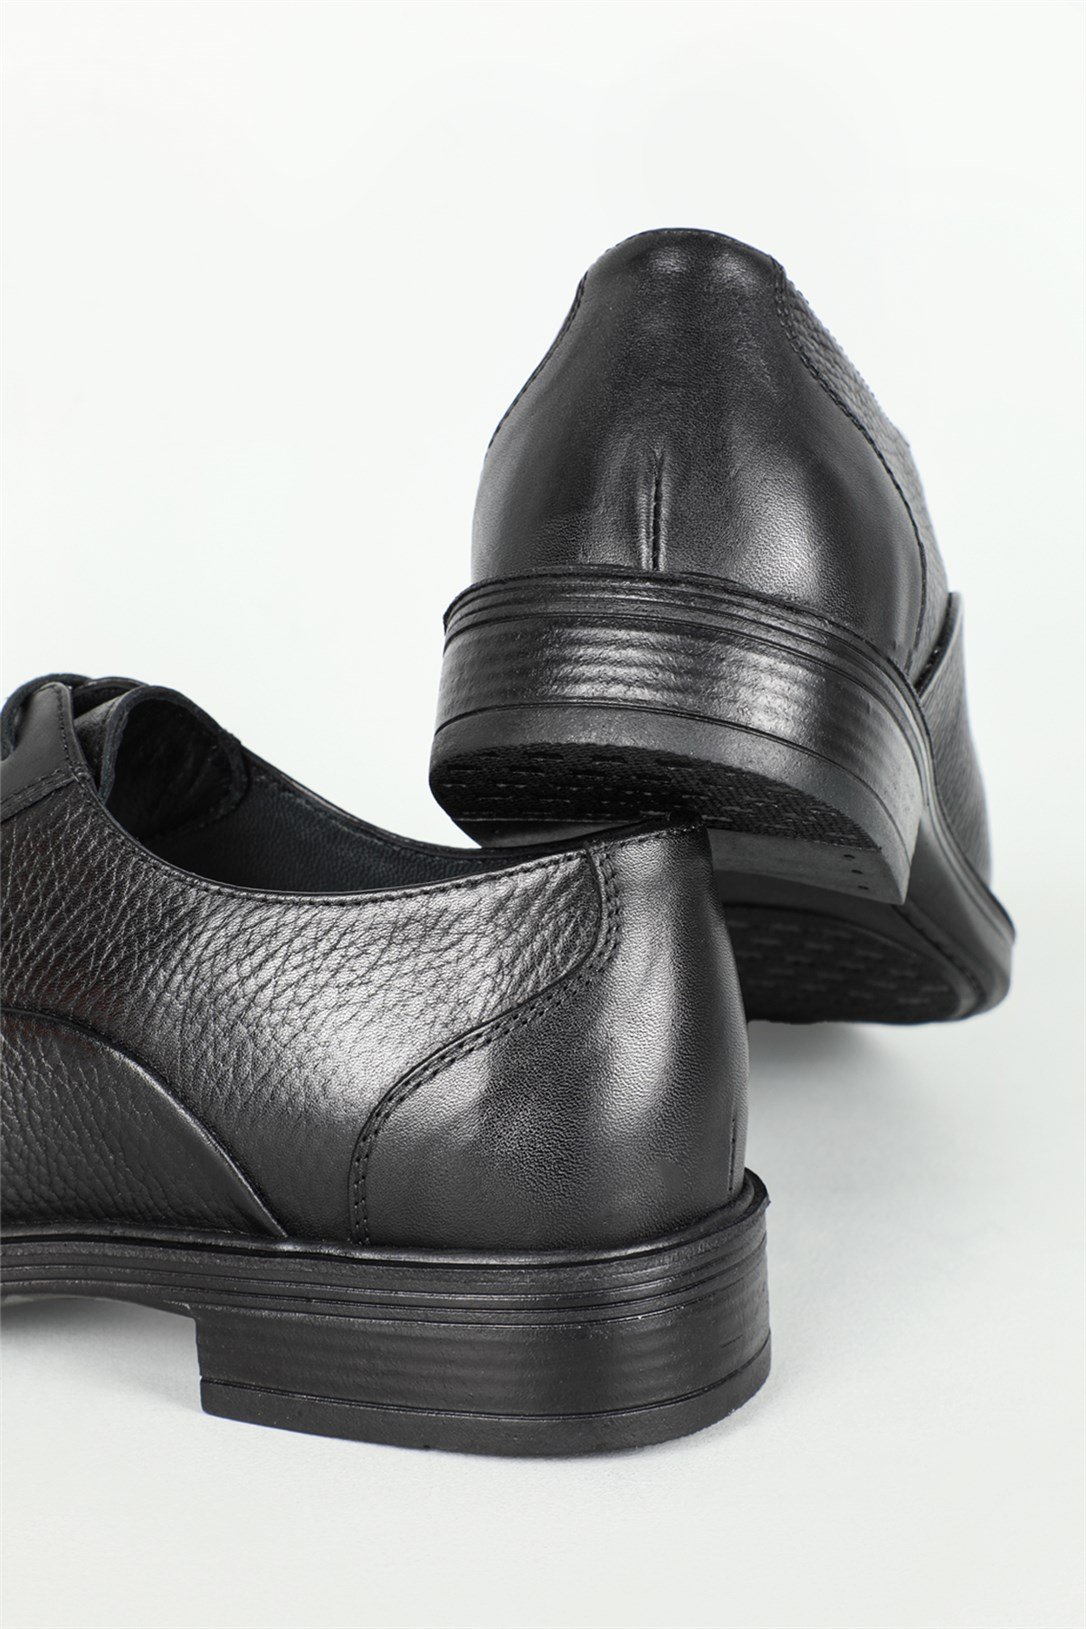 Berenni Klasik Deri Siyah Erkek Ayakkabı 574 | Ayakkabı City